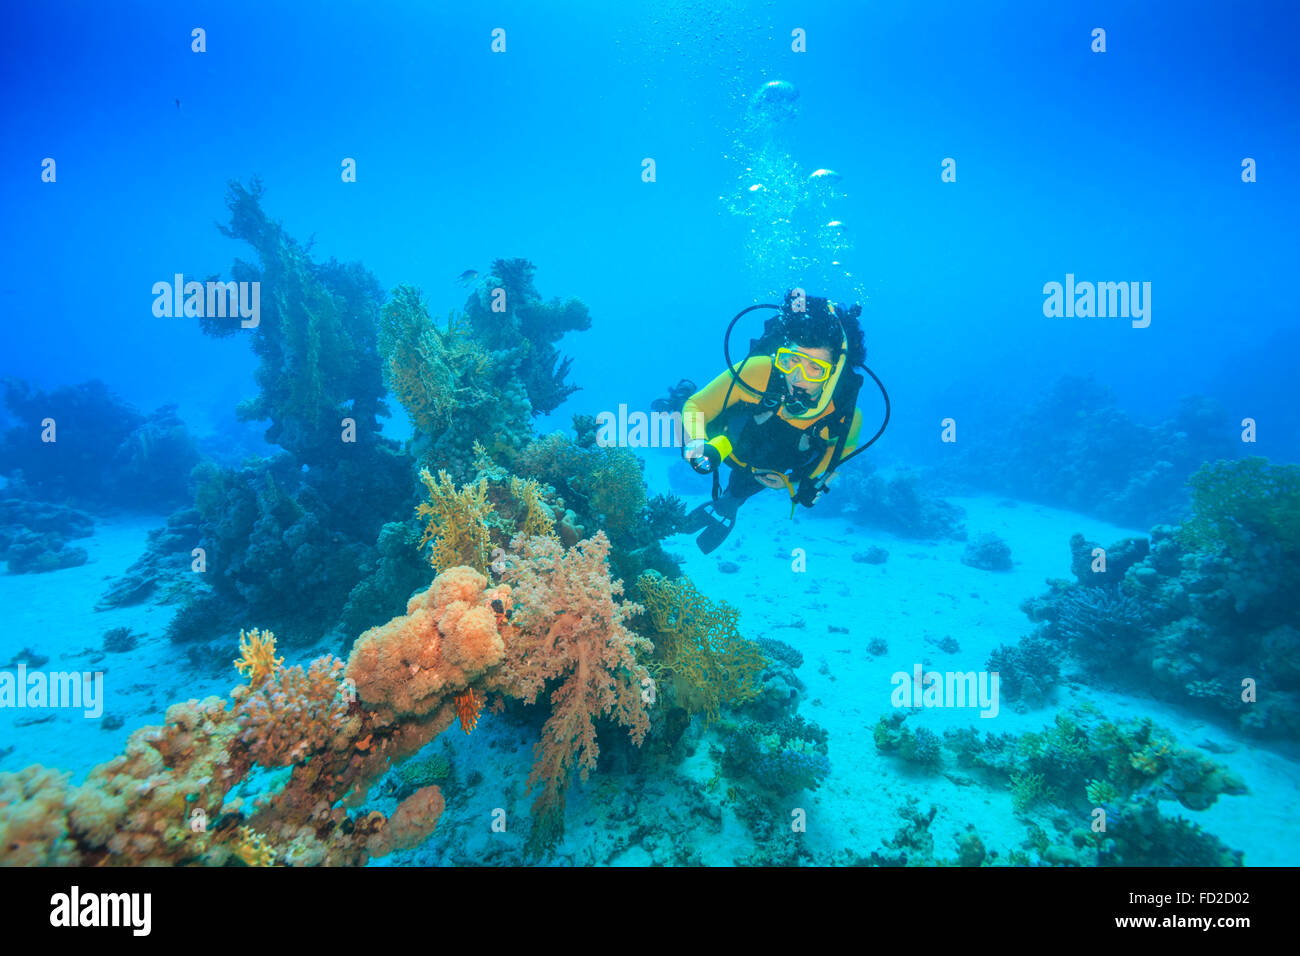 Aventure, aqua, bleu, corail, profondeur de plongée, plongeur, l'Égypte, passe-temps, la vie, ocean, rouge, plongée, mer, sport, style, natation, sous l'eau Banque D'Images